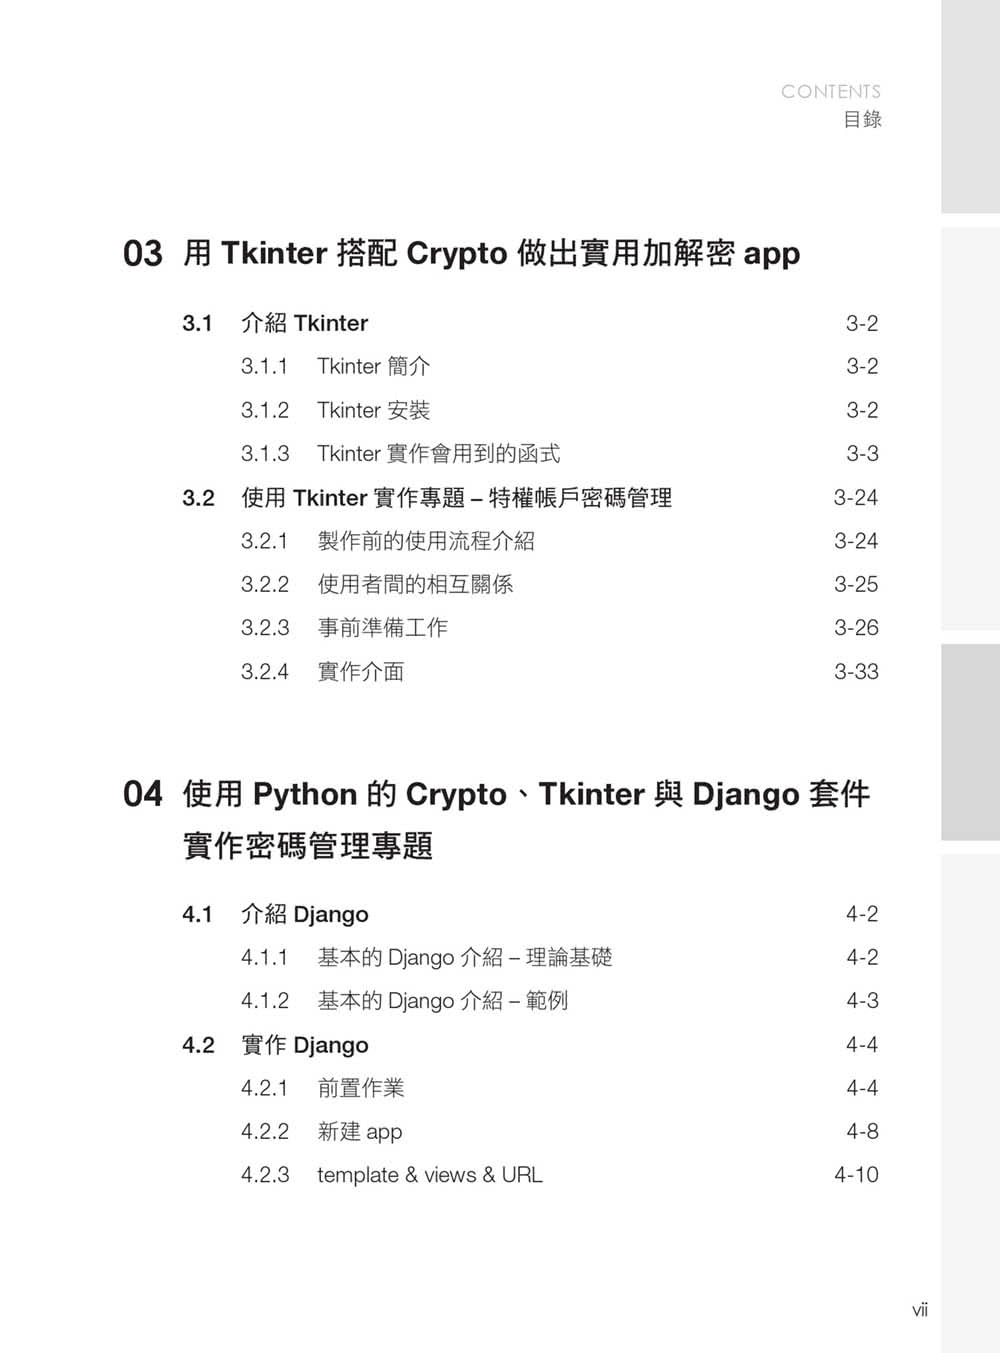 密碼管理系統理論與實作：使用 Python 的 Crypto、Tkinter 與 Django 套件